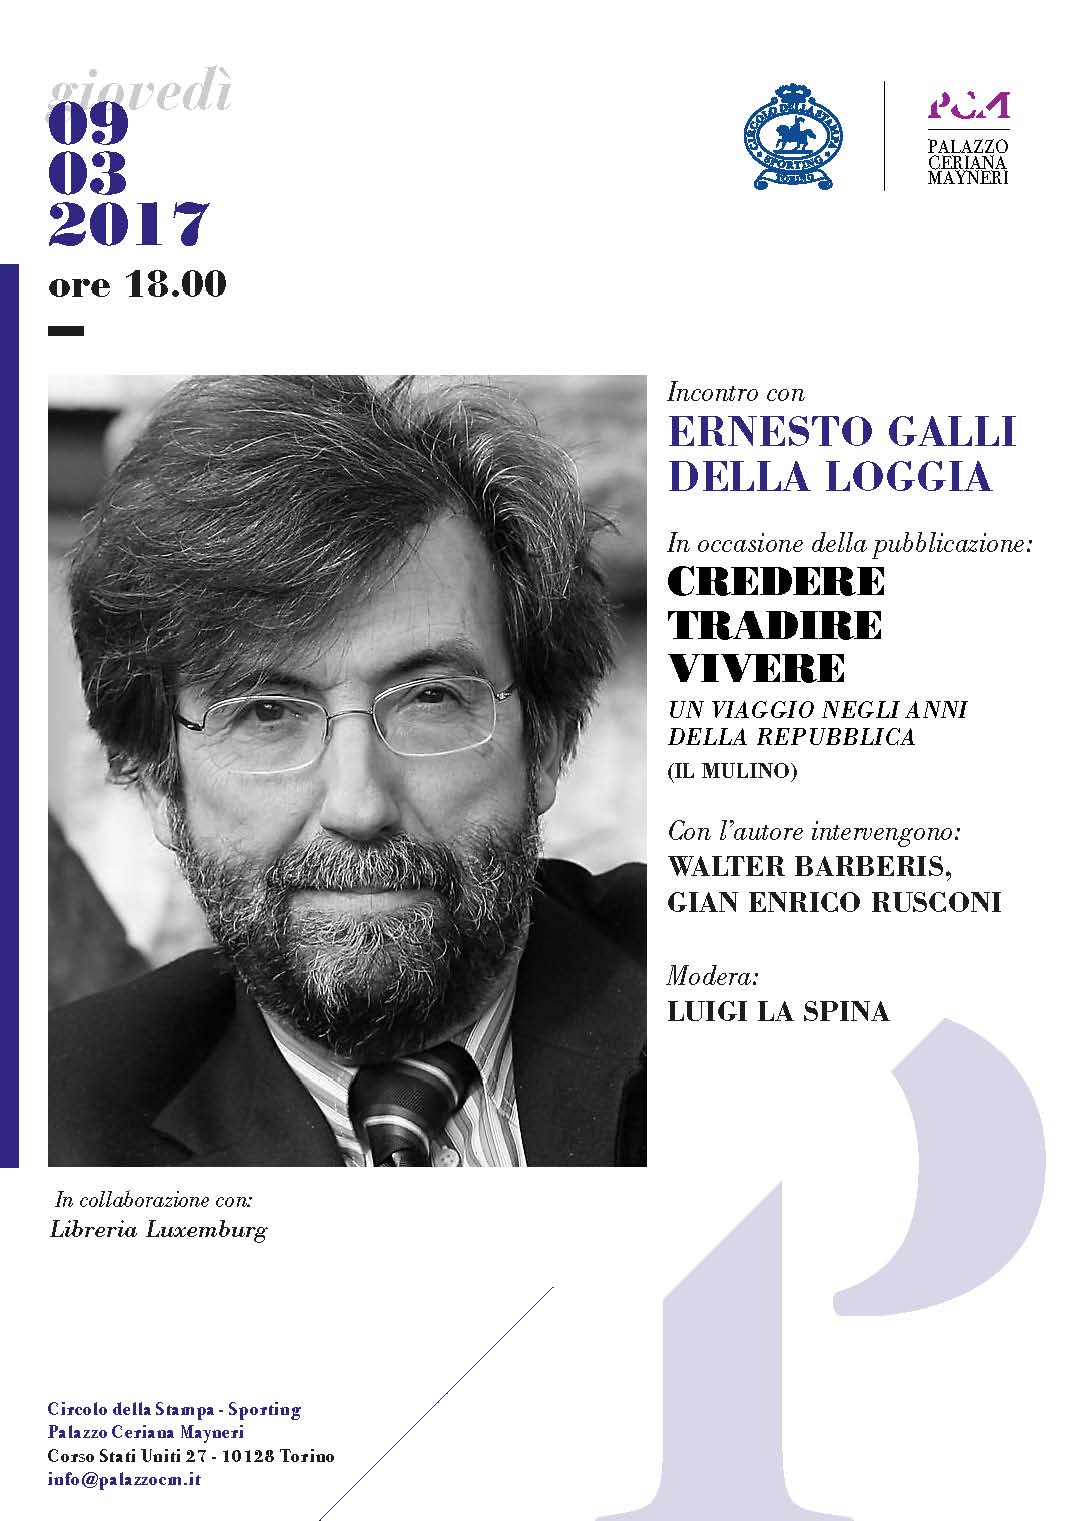 Palazzo Ceriana Mayneri 9 marzo: Presentazione del libro "Credere Tradire Vivere" di Ernesto Galli Della Loggia